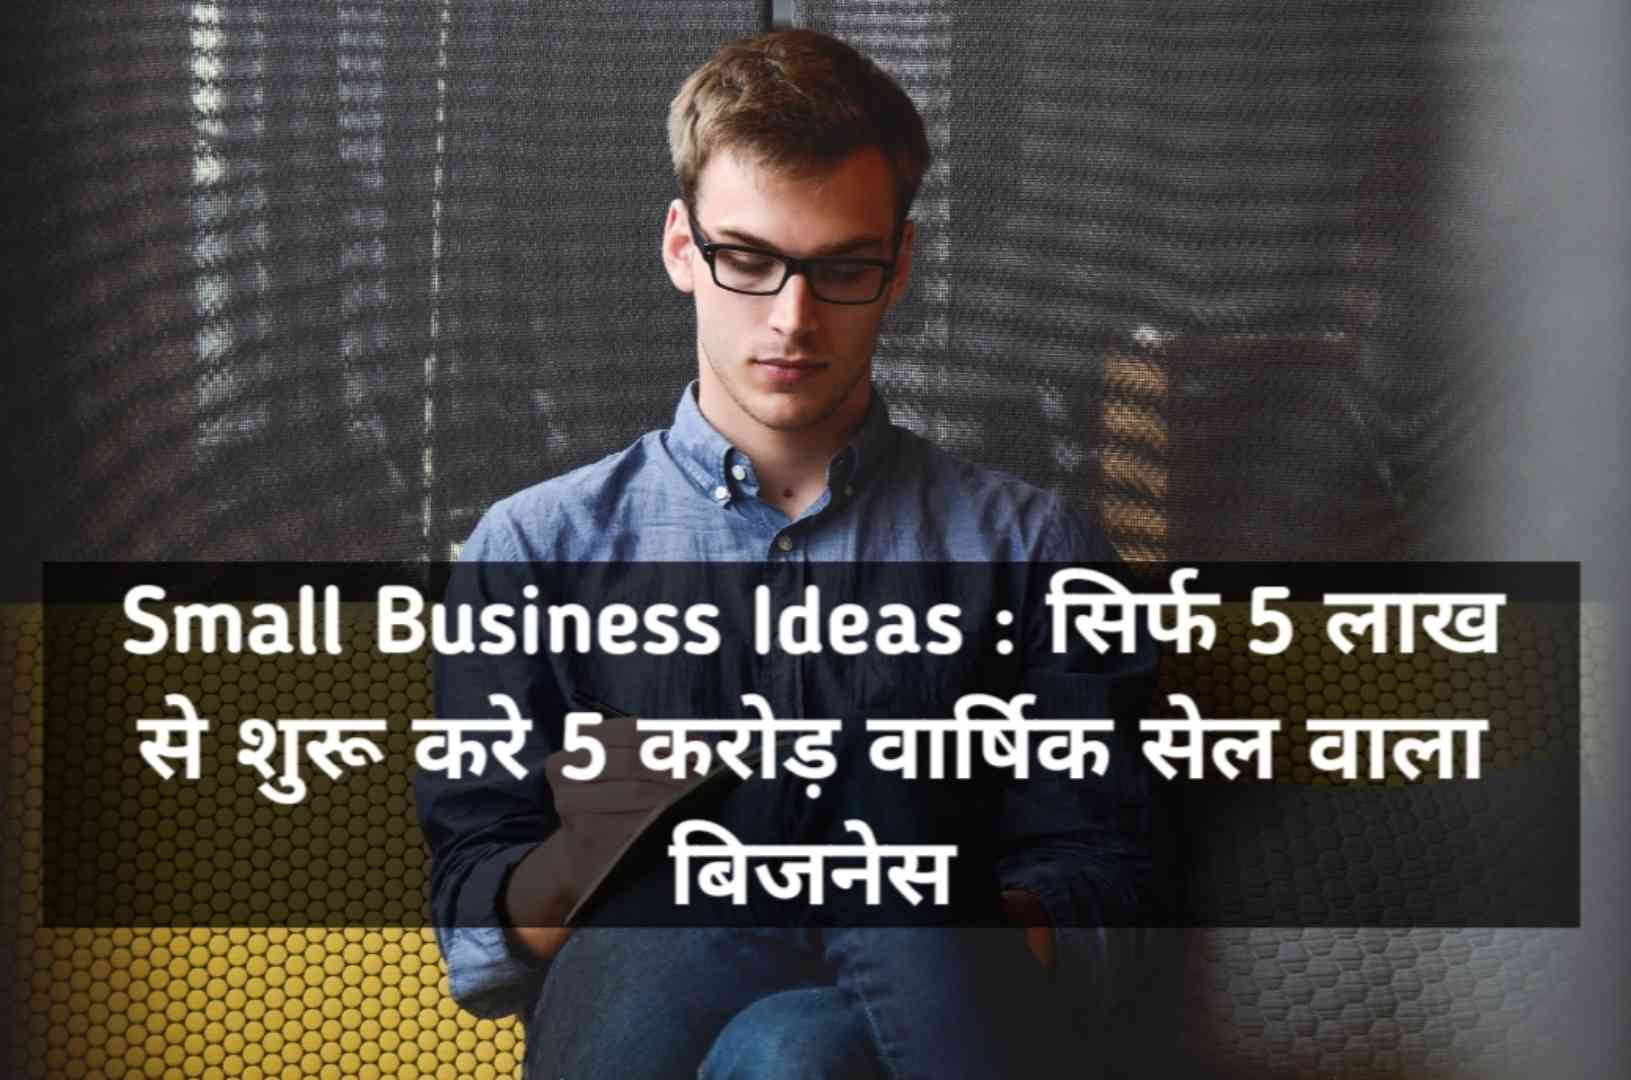 Small Business Ideas : सिर्फ 5 लाख से शुरू करे 5 करोड़ वार्षिक सेल वाला बिजनेस